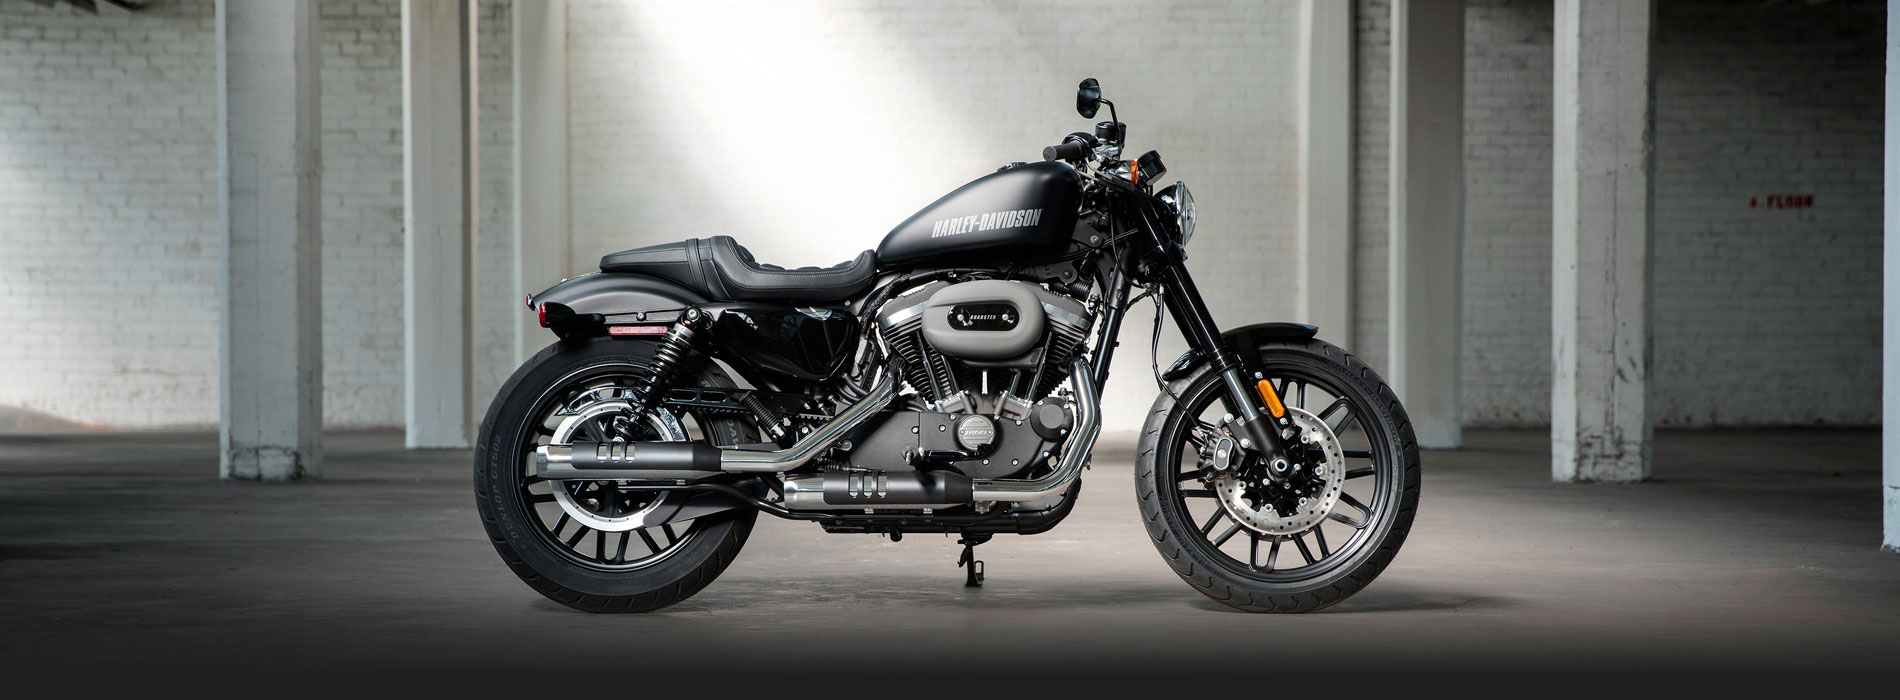 Uma Harley Davidson é um símbolo de liberdade porque existe uma cultura ao redor da marca Harley Davidson.